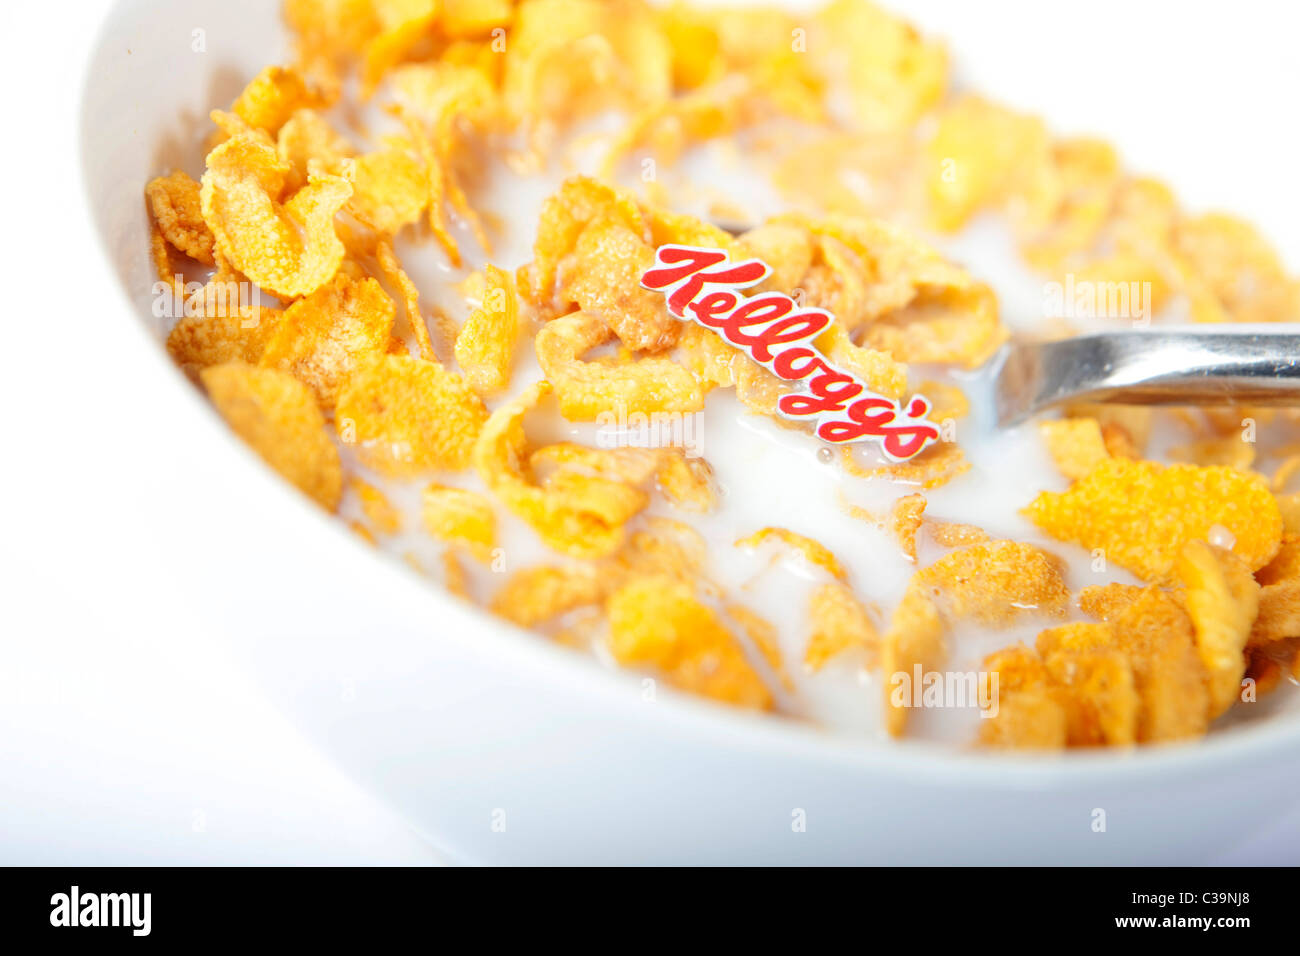 Immagine illustrativa della Kellogg's logo e marchio famoso fiocchi di mais. Foto Stock